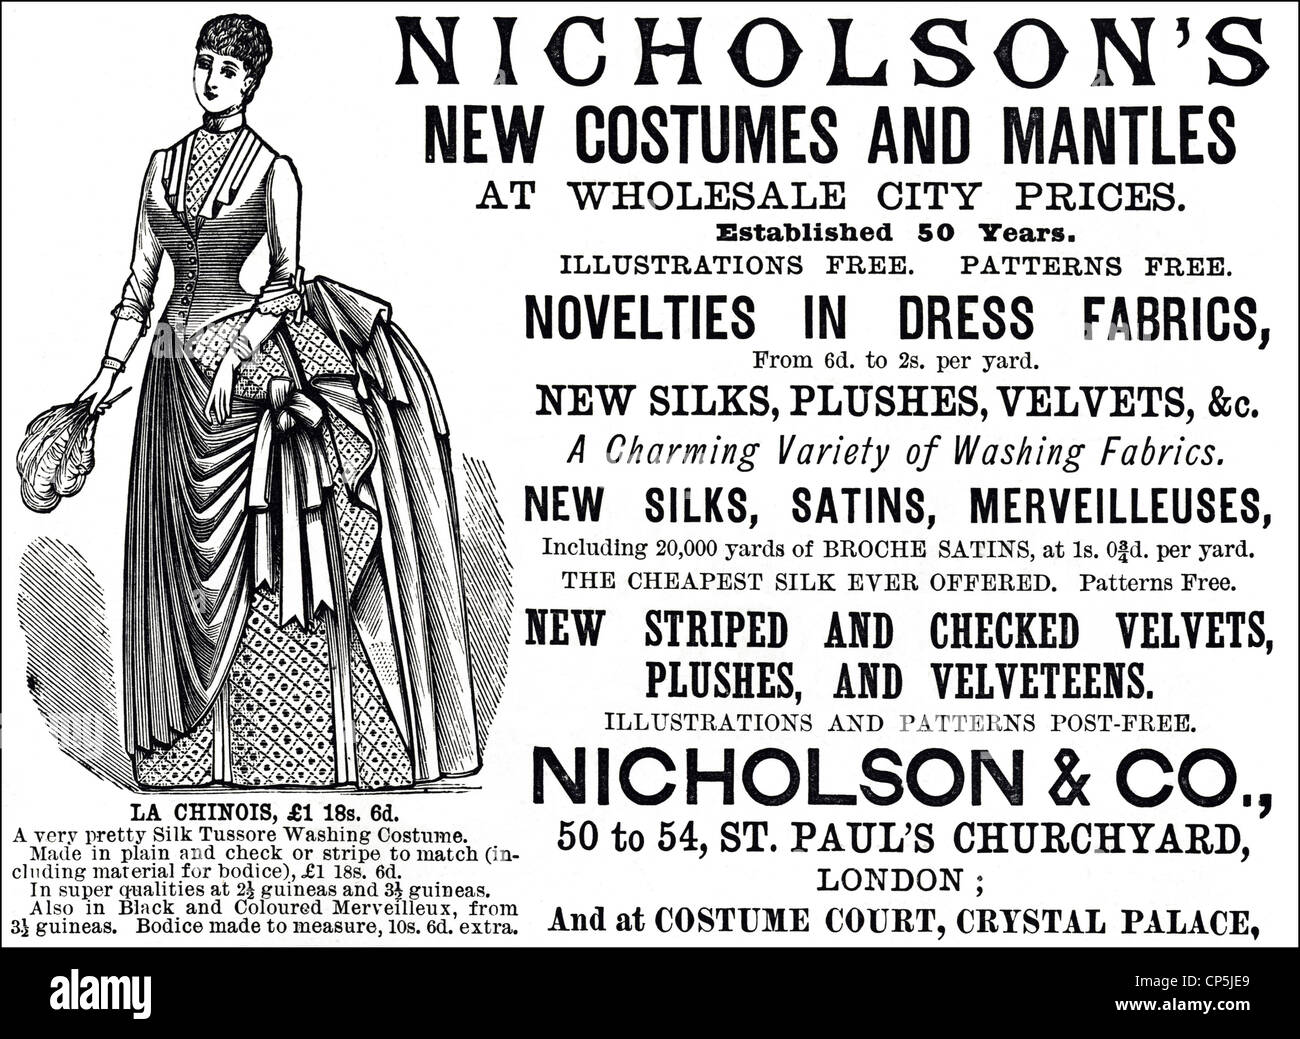 Vittoriana originale pubblicità pubblicità moda da NICHOLSON & CO. In data 13 giugno 1887. Foto Stock